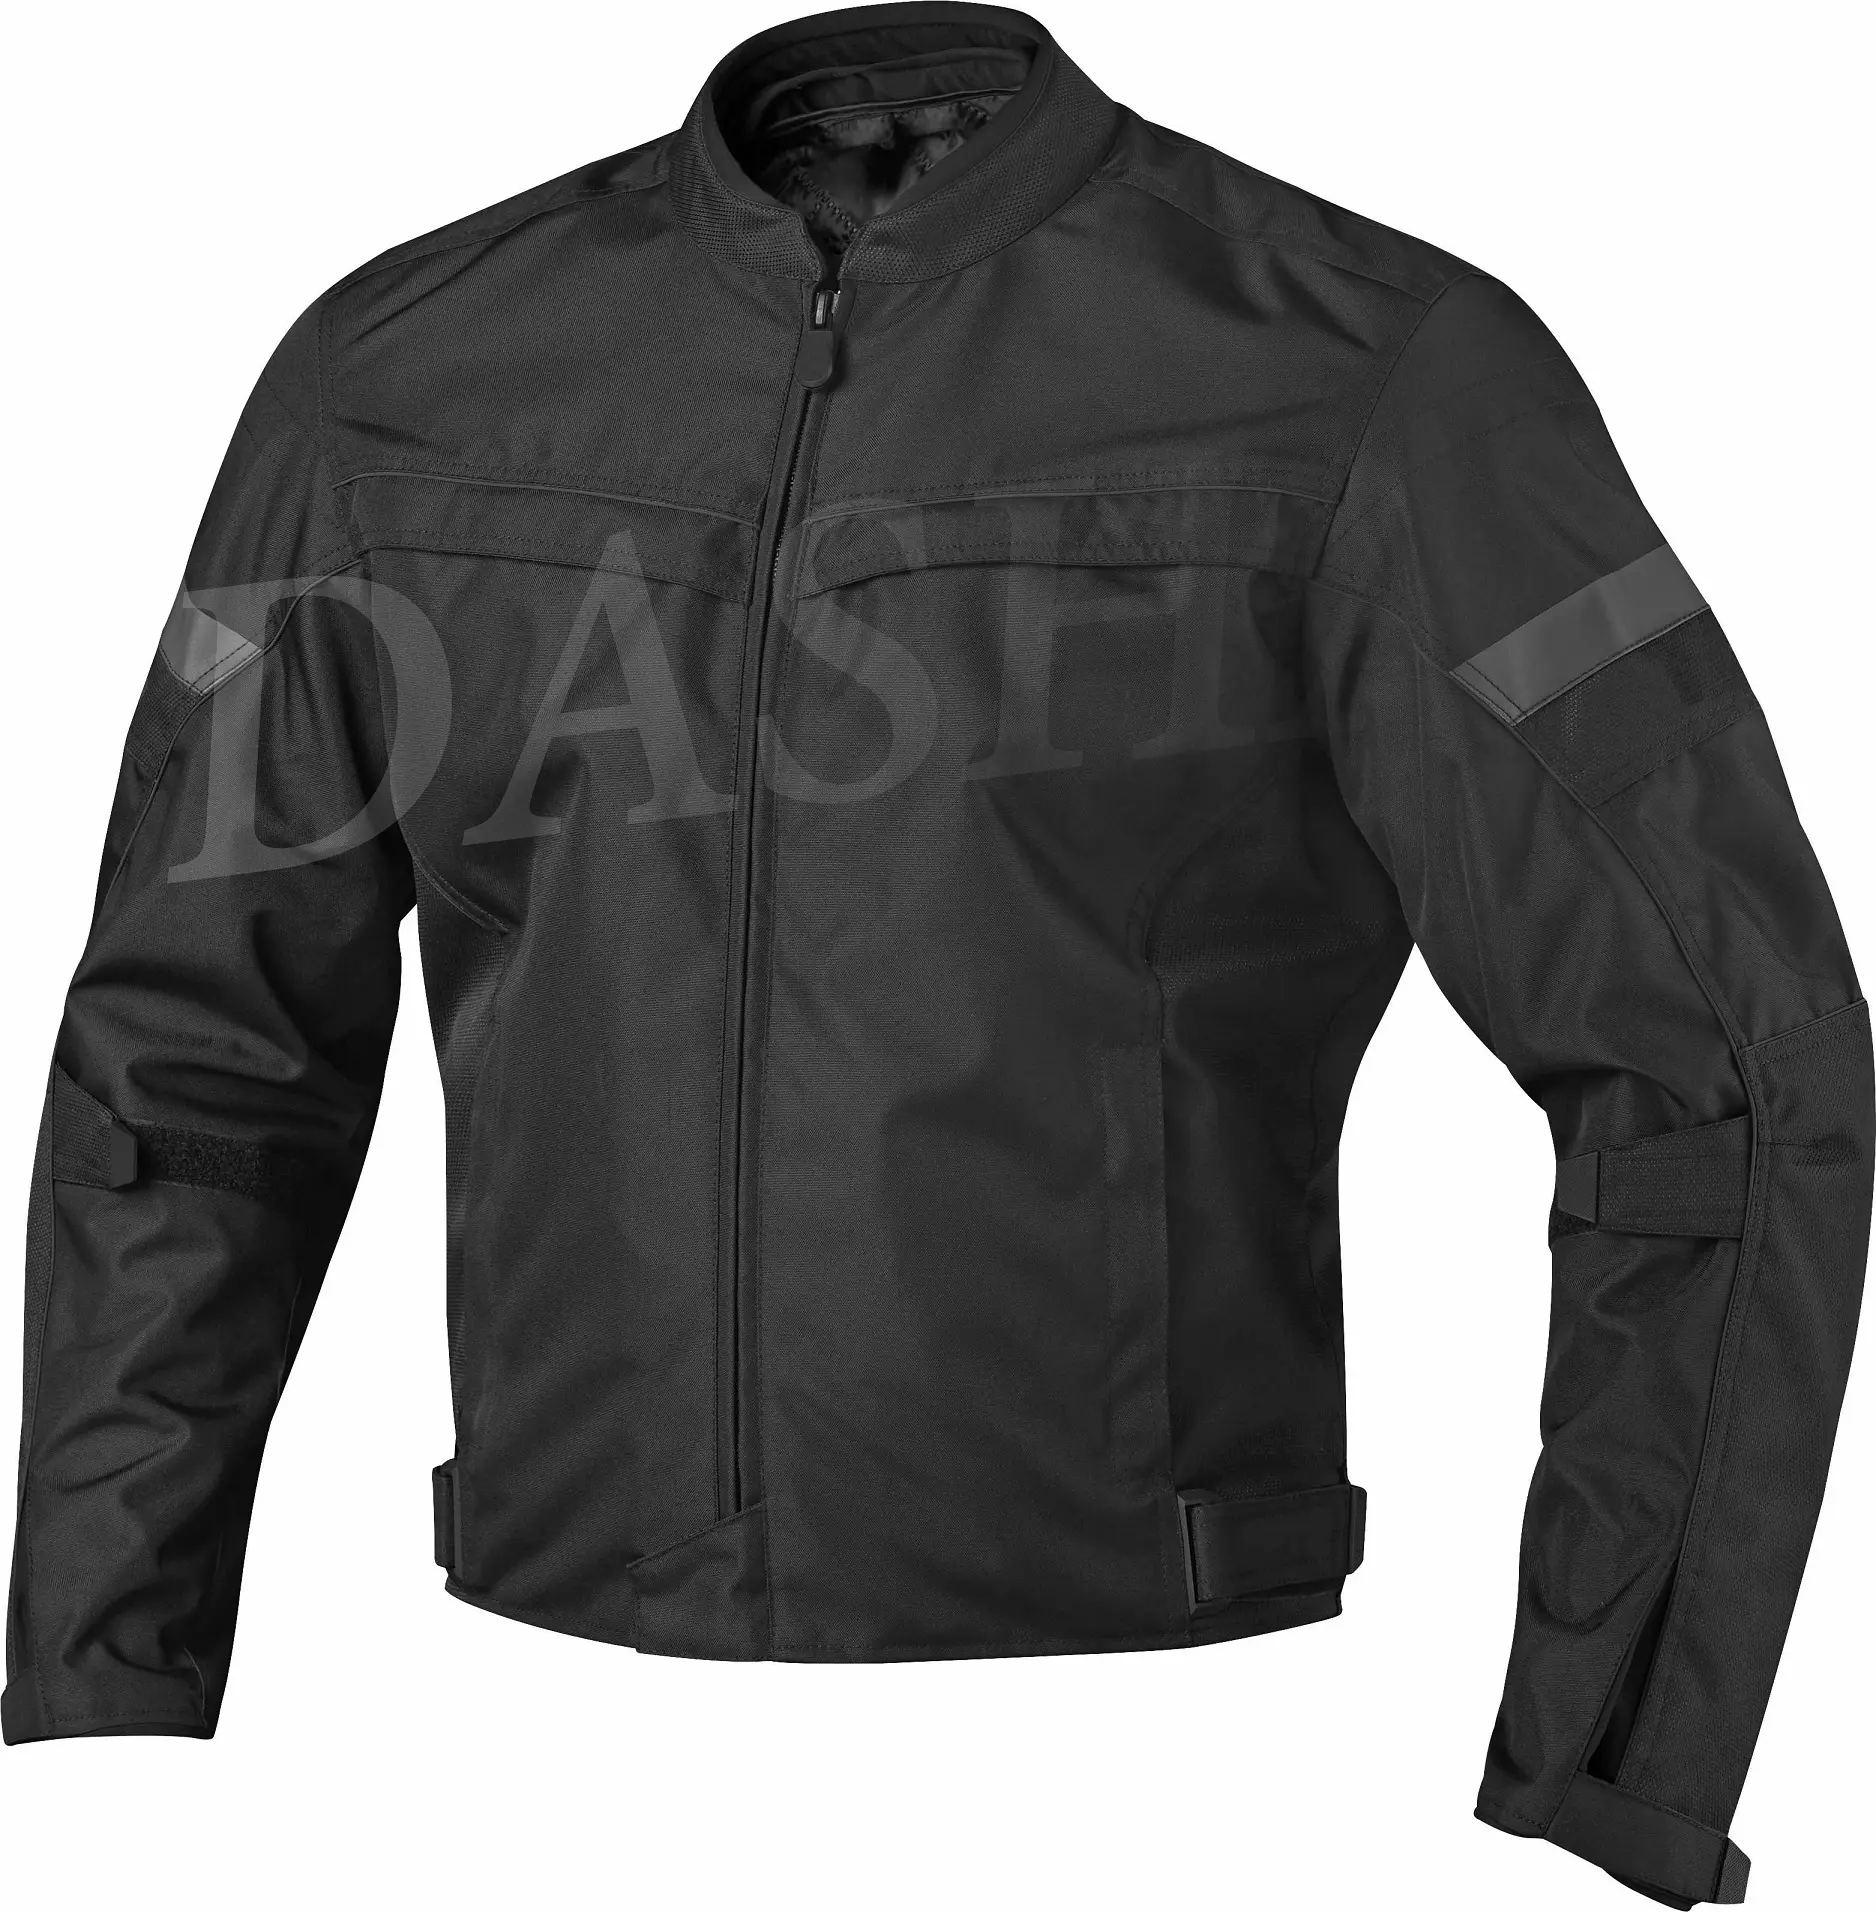 남성용 블랙 색상의 CE 승인 프로텍터와 전문가를위한 프리미엄 품질의 짧은 오토바이 재킷